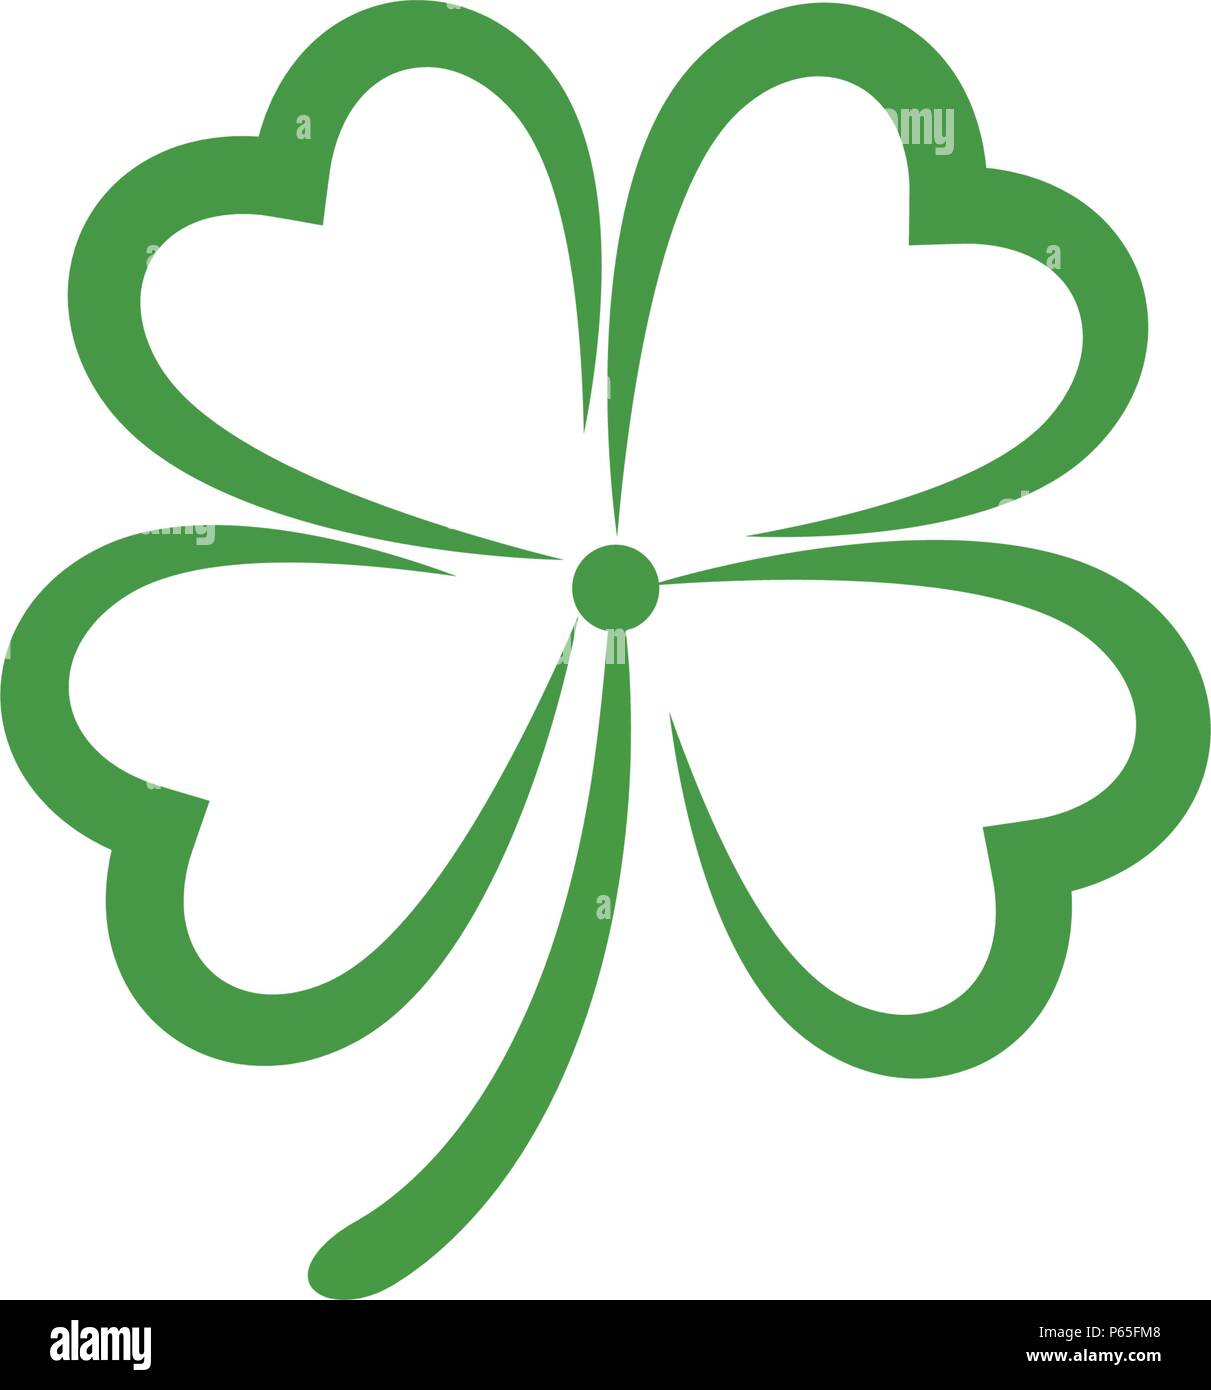 Green Clover Leaf Logo Template Design Vector Stock Vector